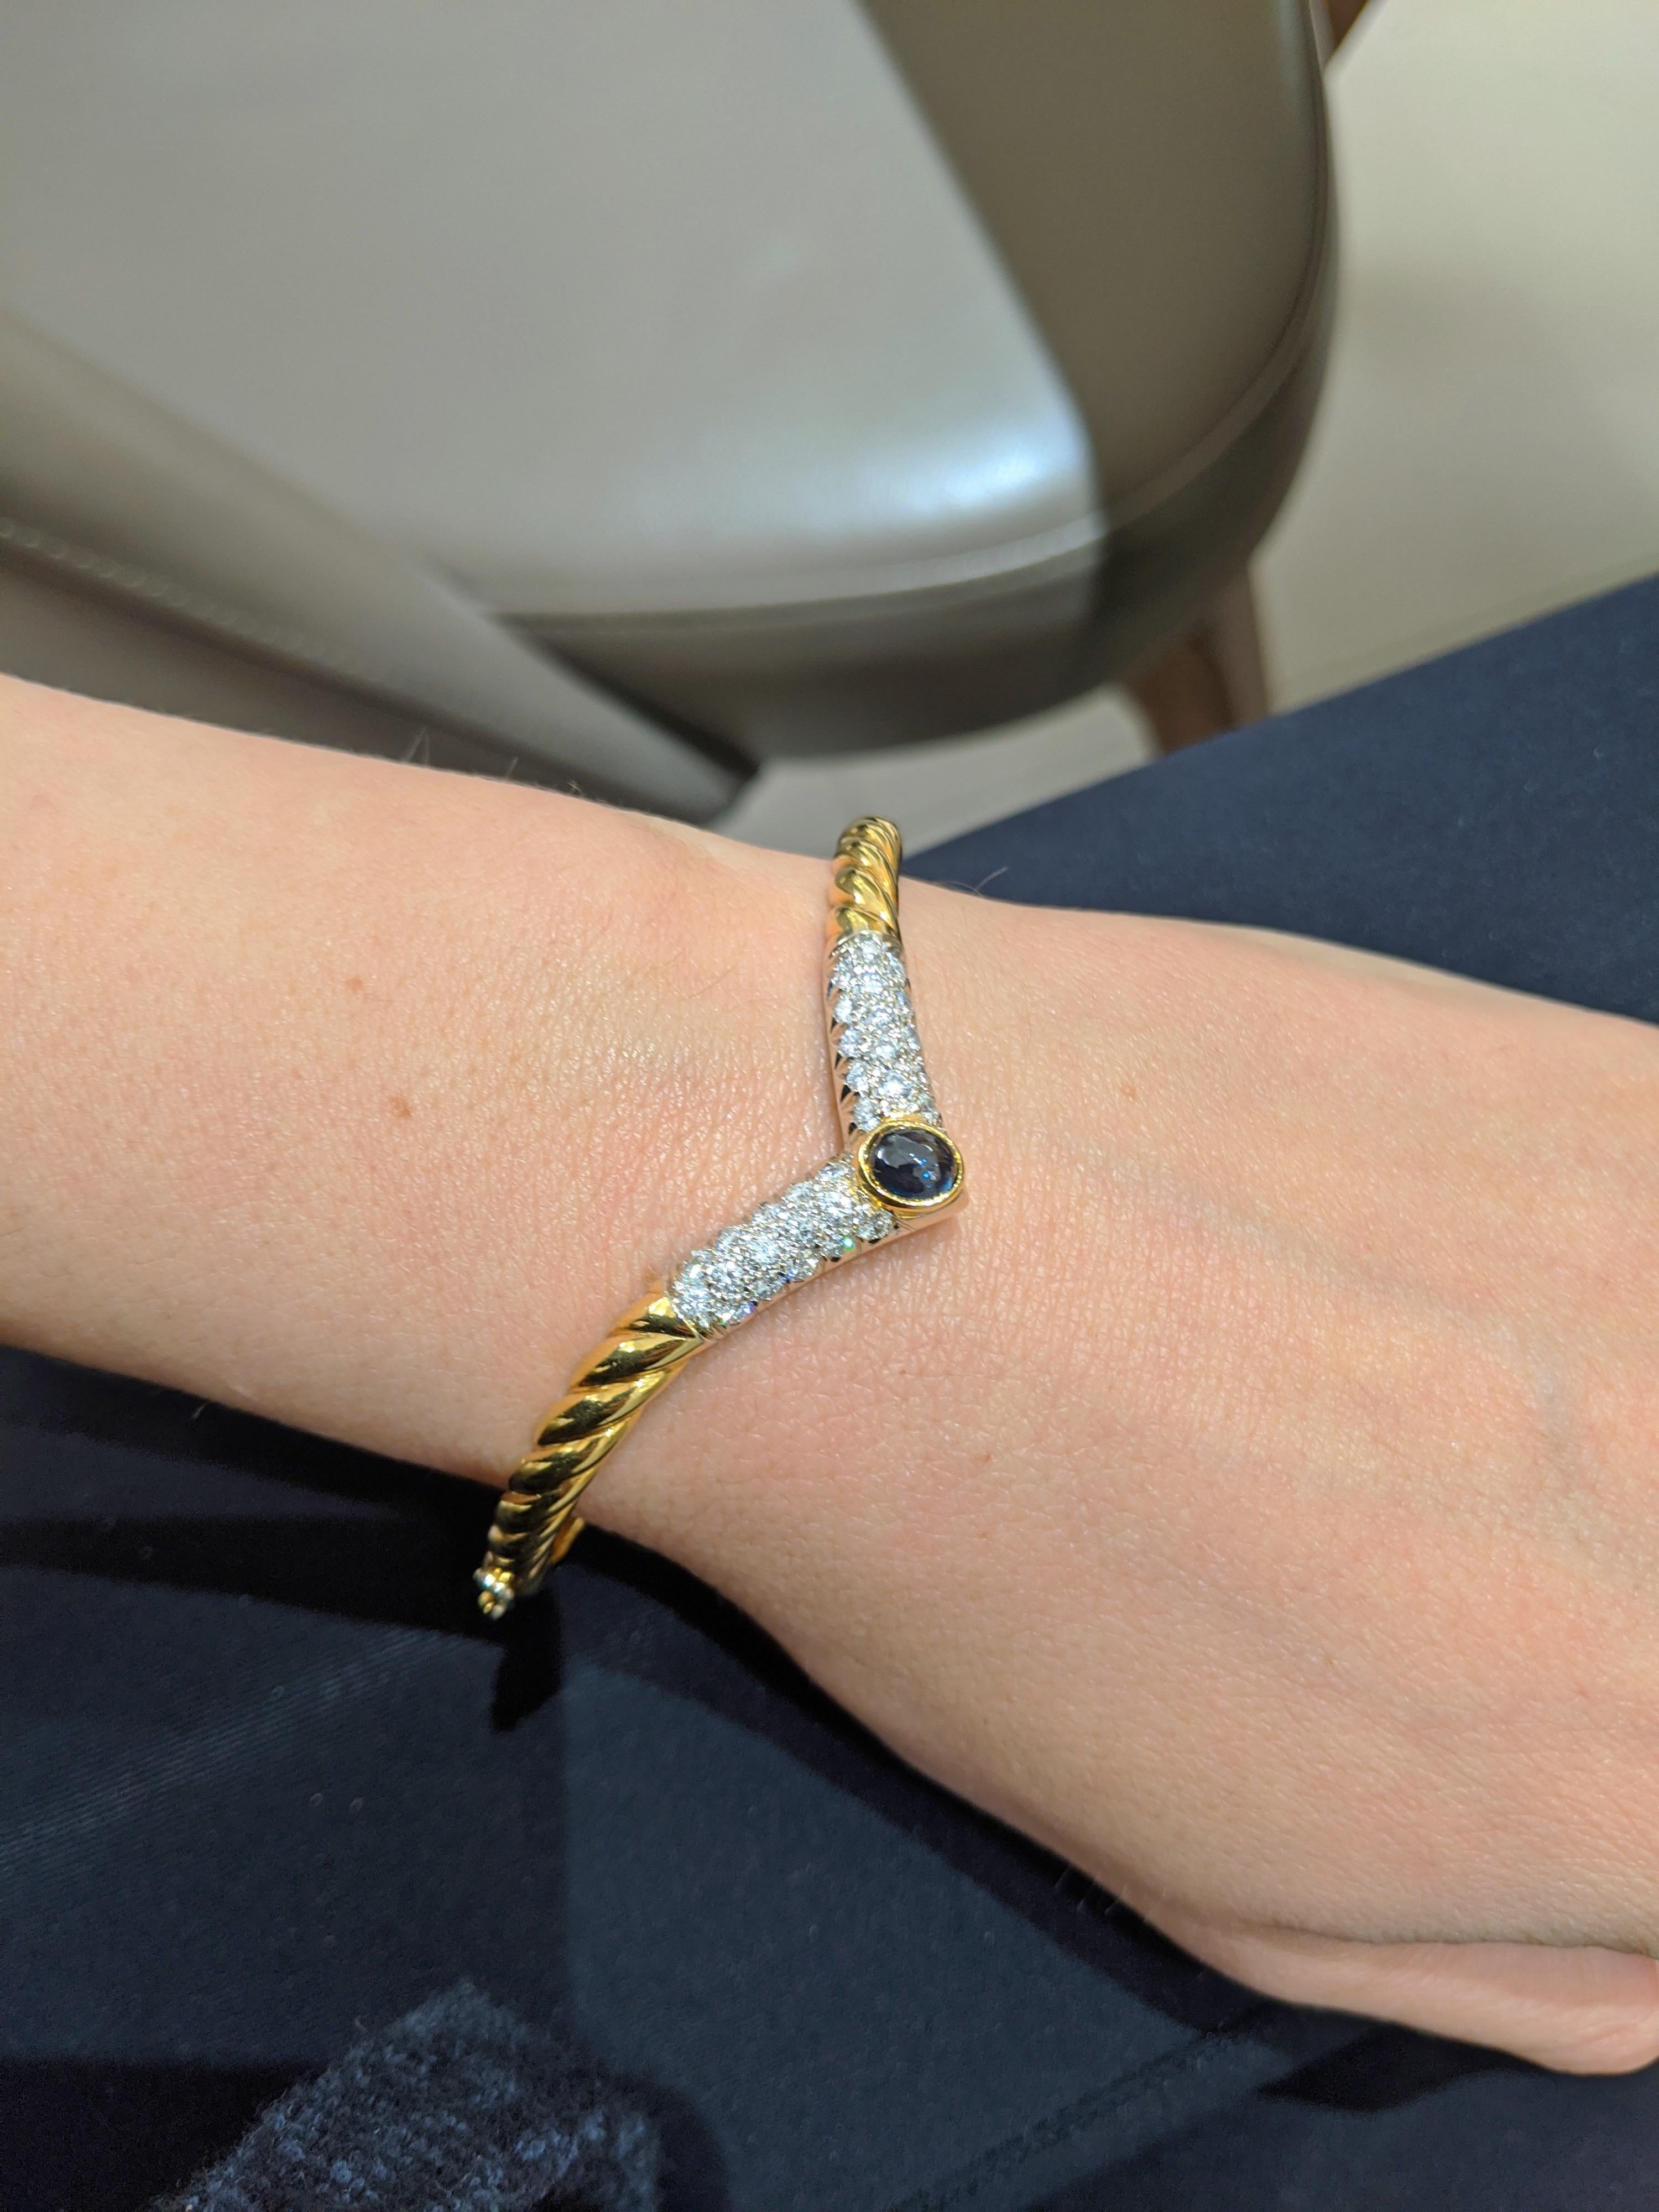 Il s'agit d'un magnifique bracelet bangle en or jaune 18 carats. Le bracelet en forme de V est serti de diamants pavés et d'un saphir bleu ovale cabochon. Le bracelet mesure 2 1/4